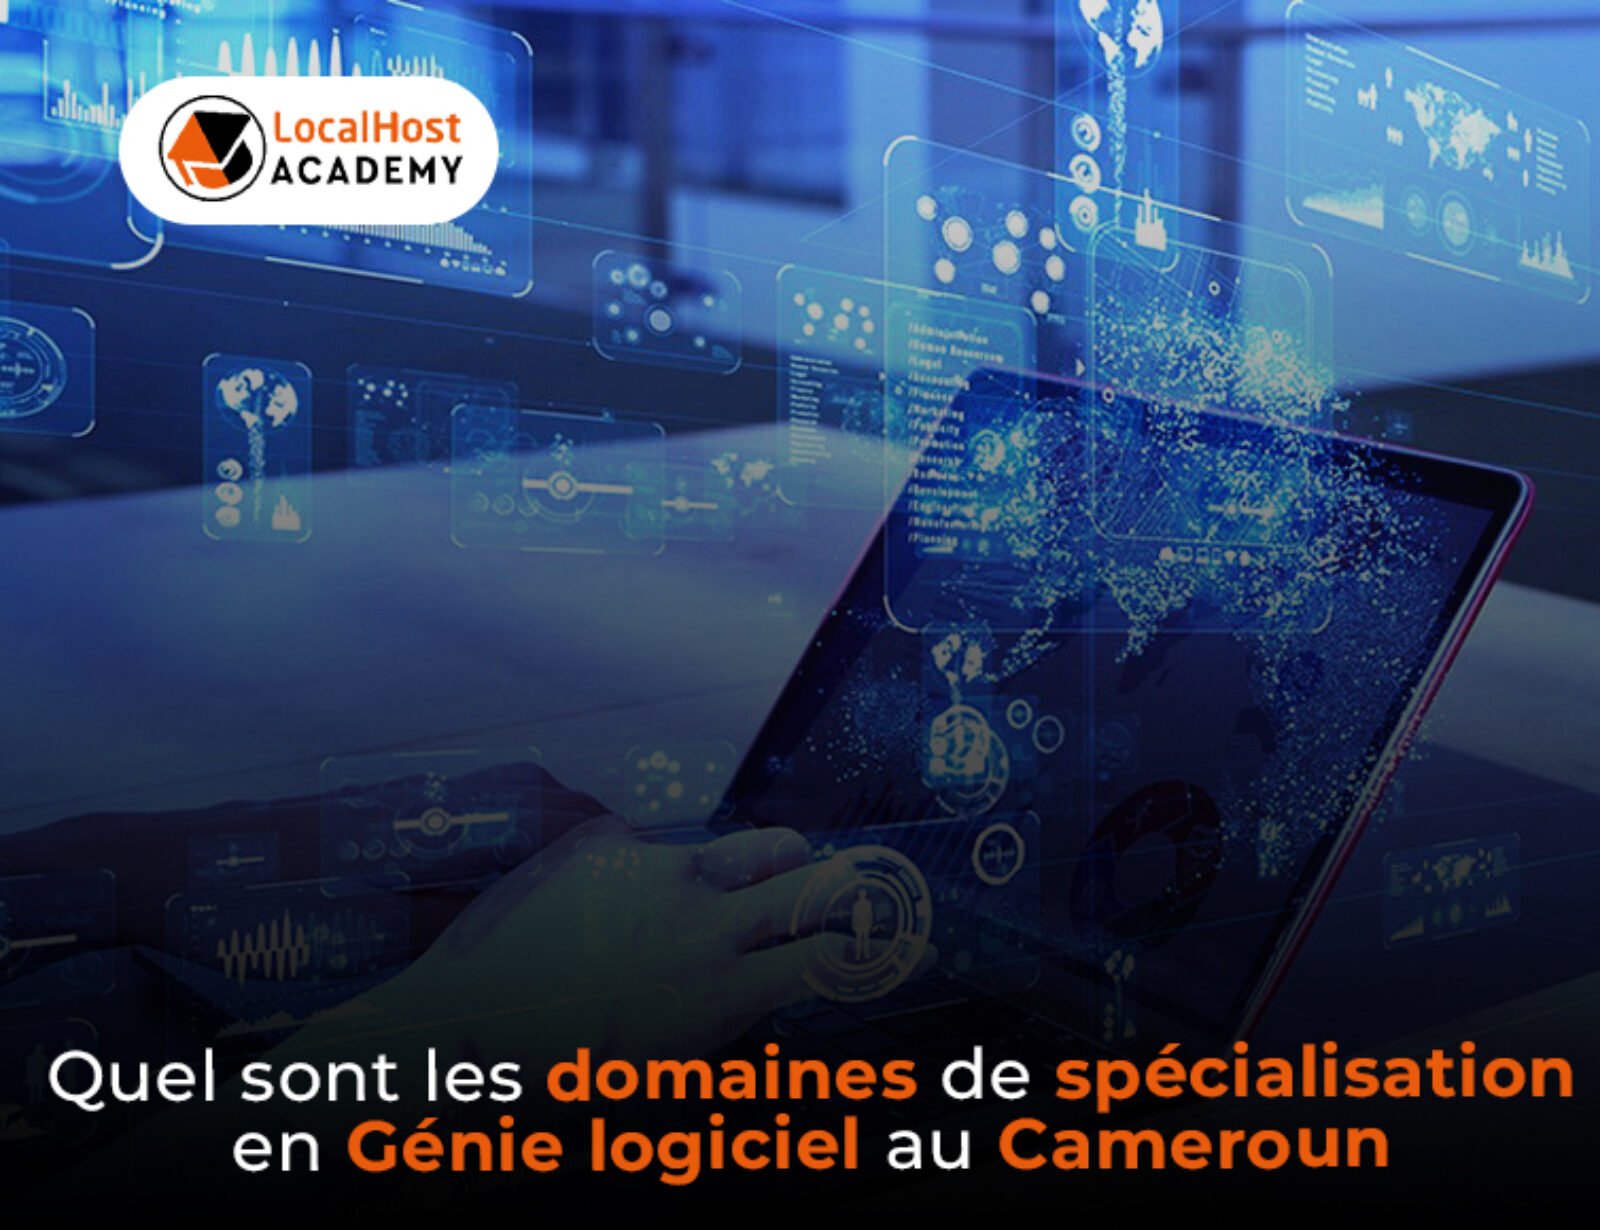 Quels sont les domaines de spécialisation en génie logiciel au Cameroun ?